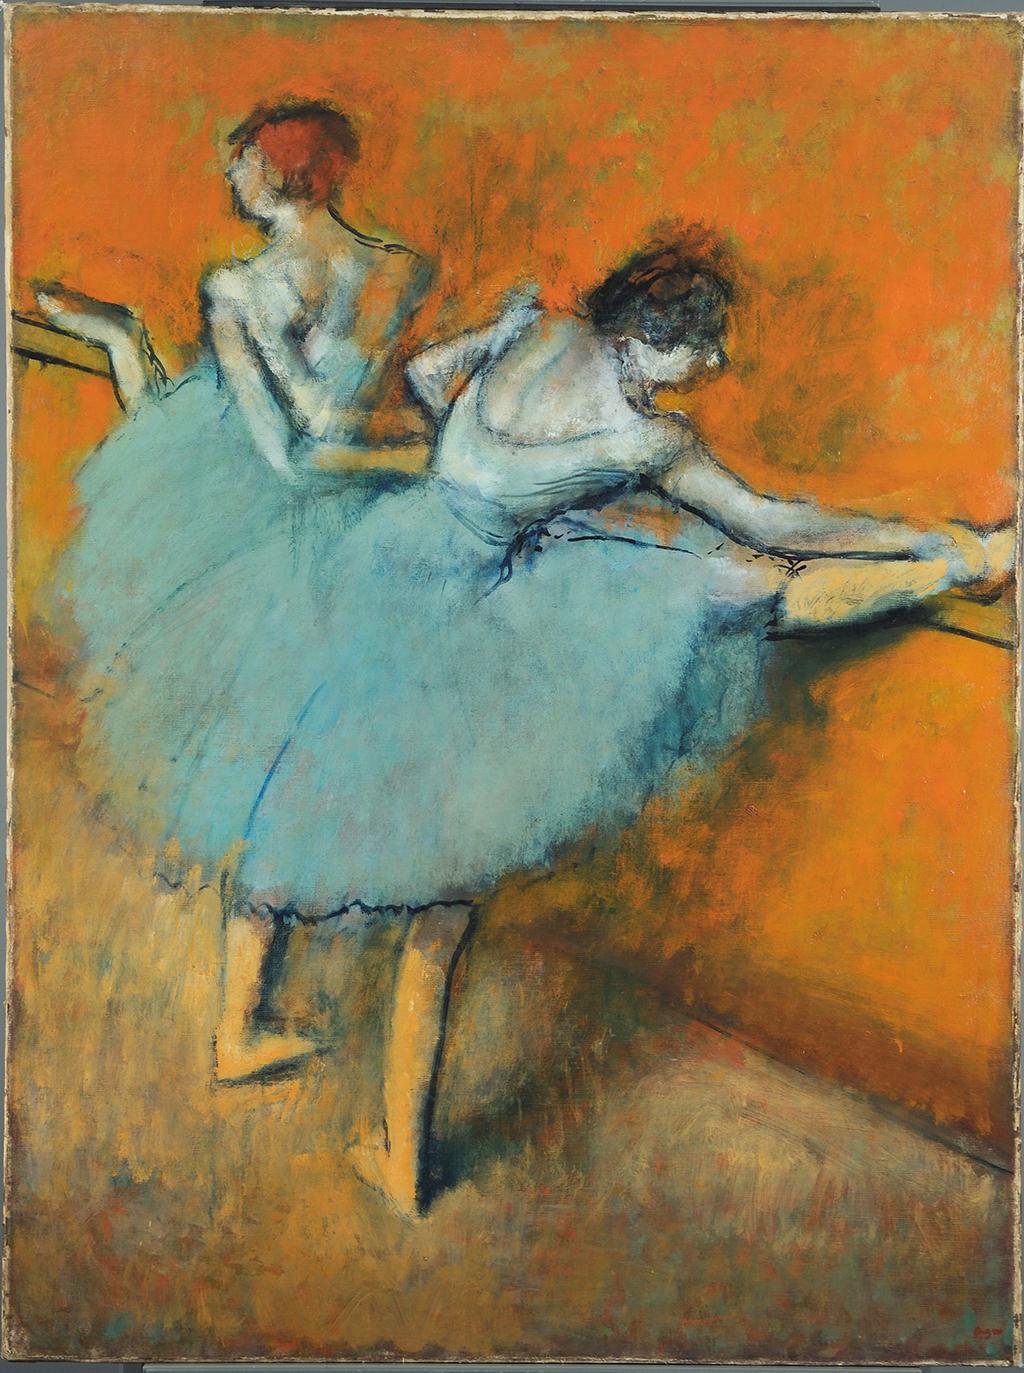 バーの踊り子 by Edgar Degas - 1900年頃 - 97.8 x 130.2 cm 